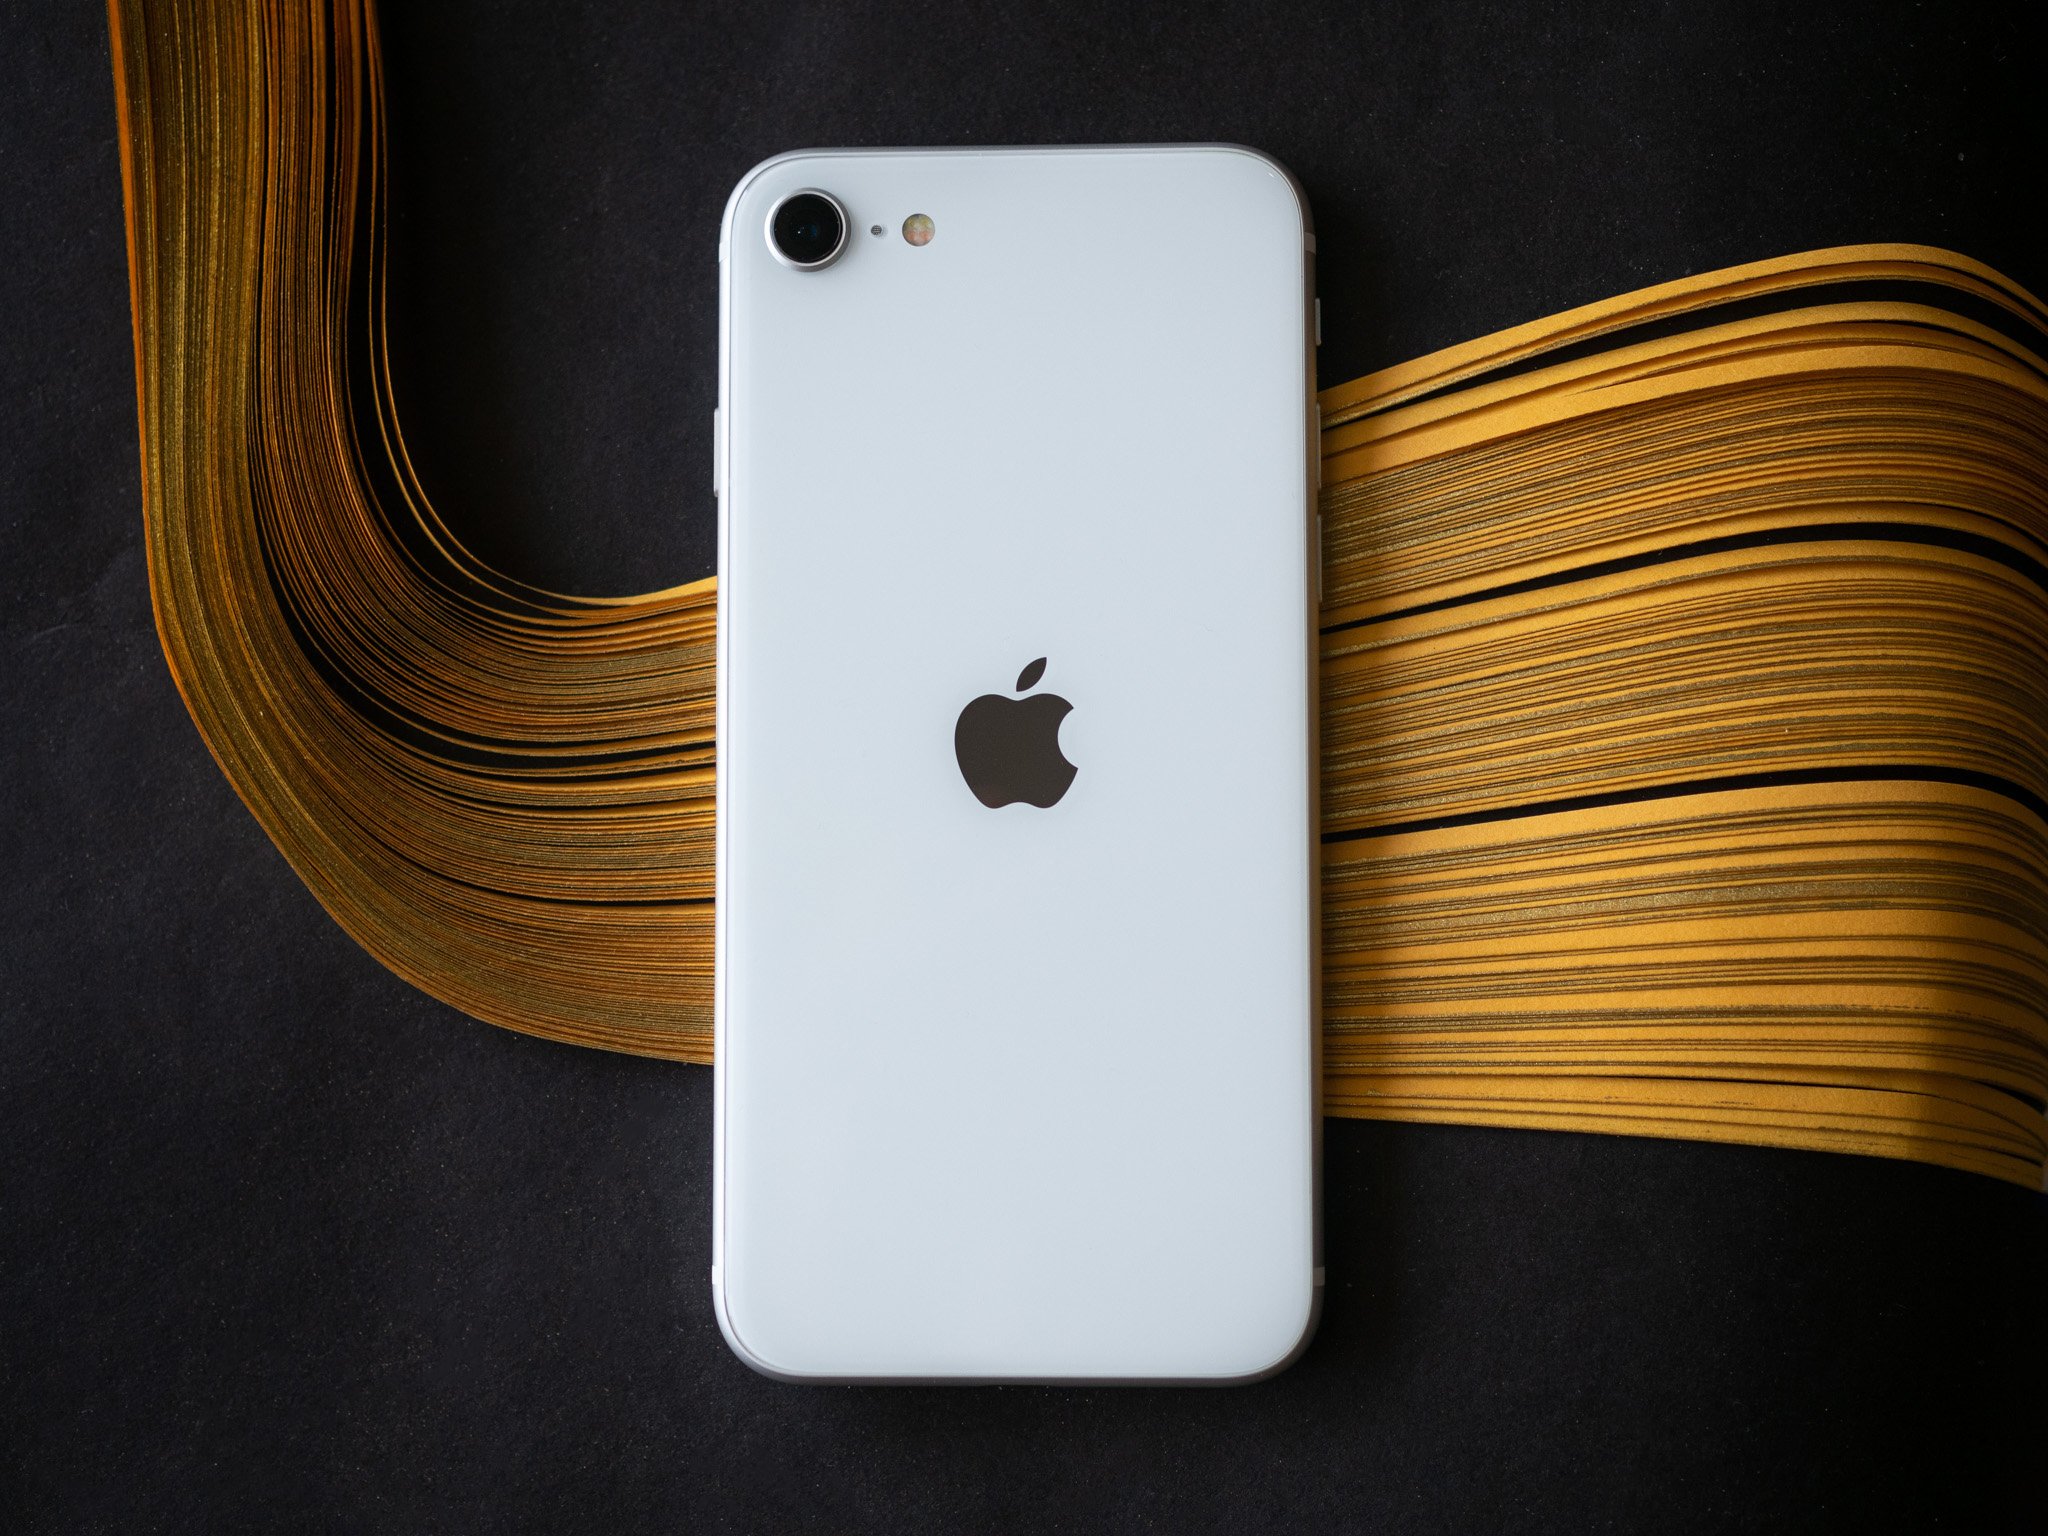 Đánh giá iPhone SE 2020 là sự kết hợp hoàn hảo giữa thiết kế đẹp mắt, hiệu năng mạnh mẽ và giá cả hợp lý. Hãy xem hình ảnh để cảm nhận rõ hơn về chiếc điện thoại này.